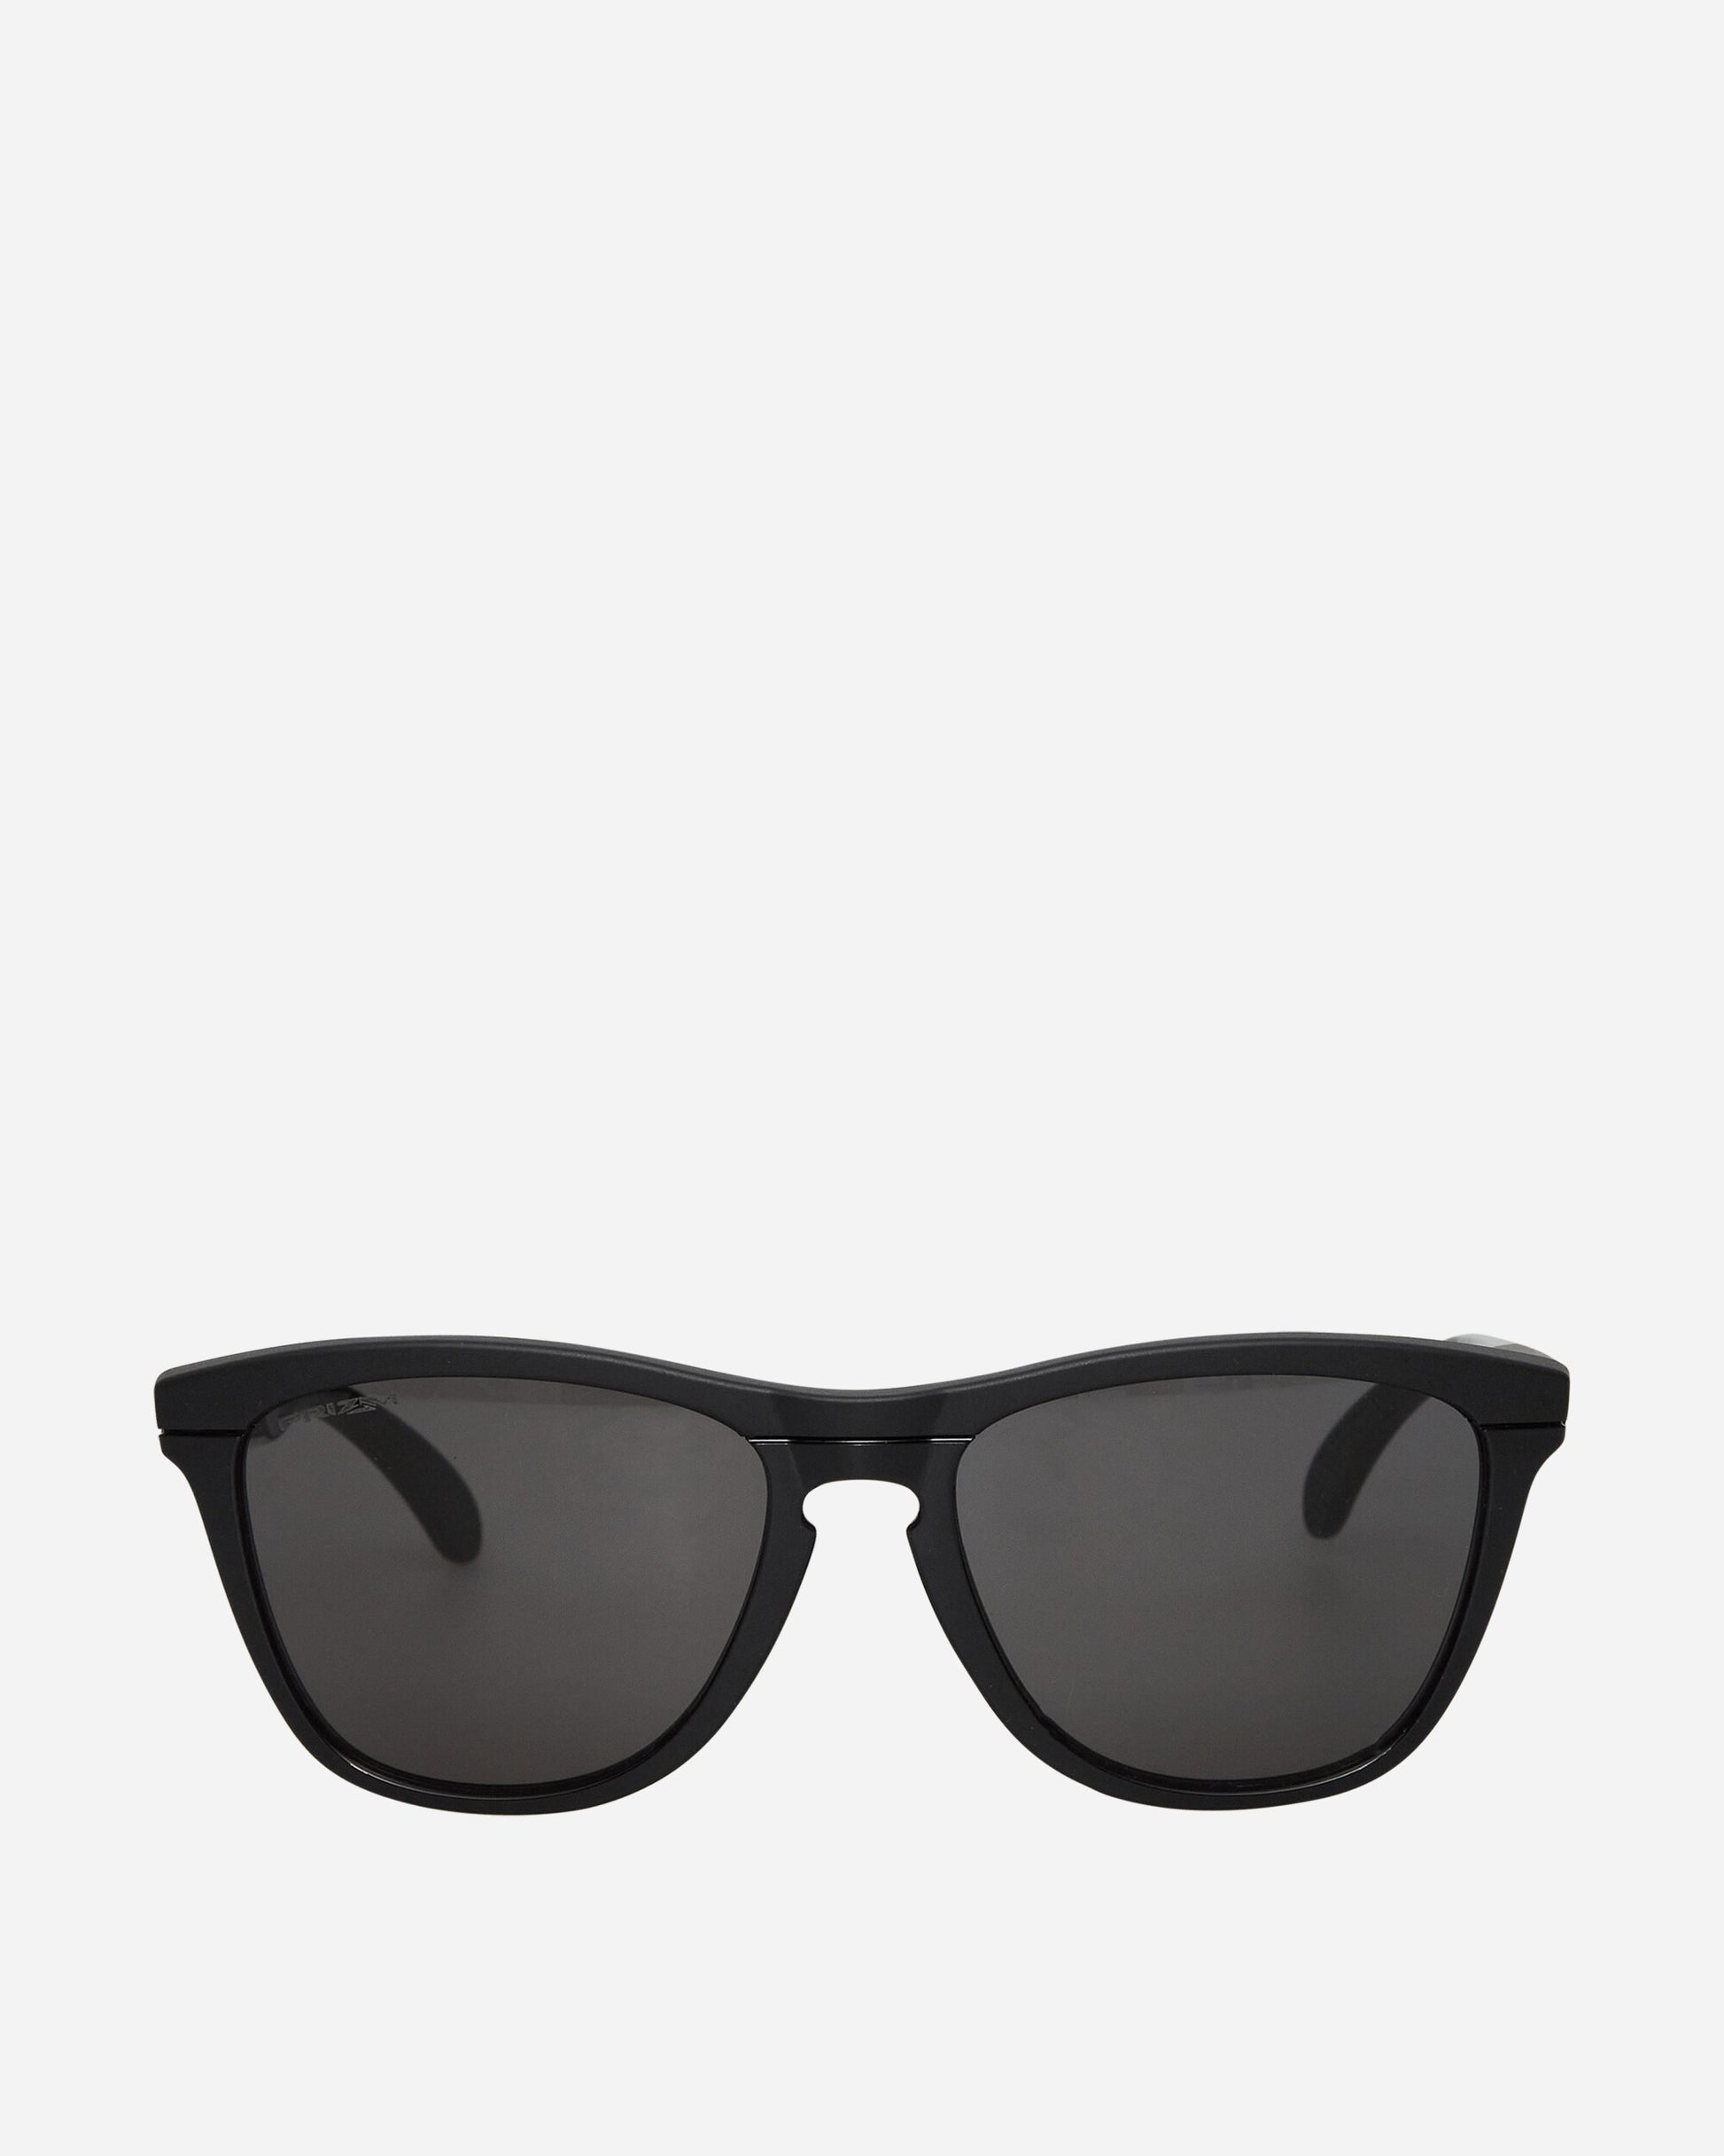 Oakley Frogskins Range Matte Black Eyewear Sunglasses OO9284 11